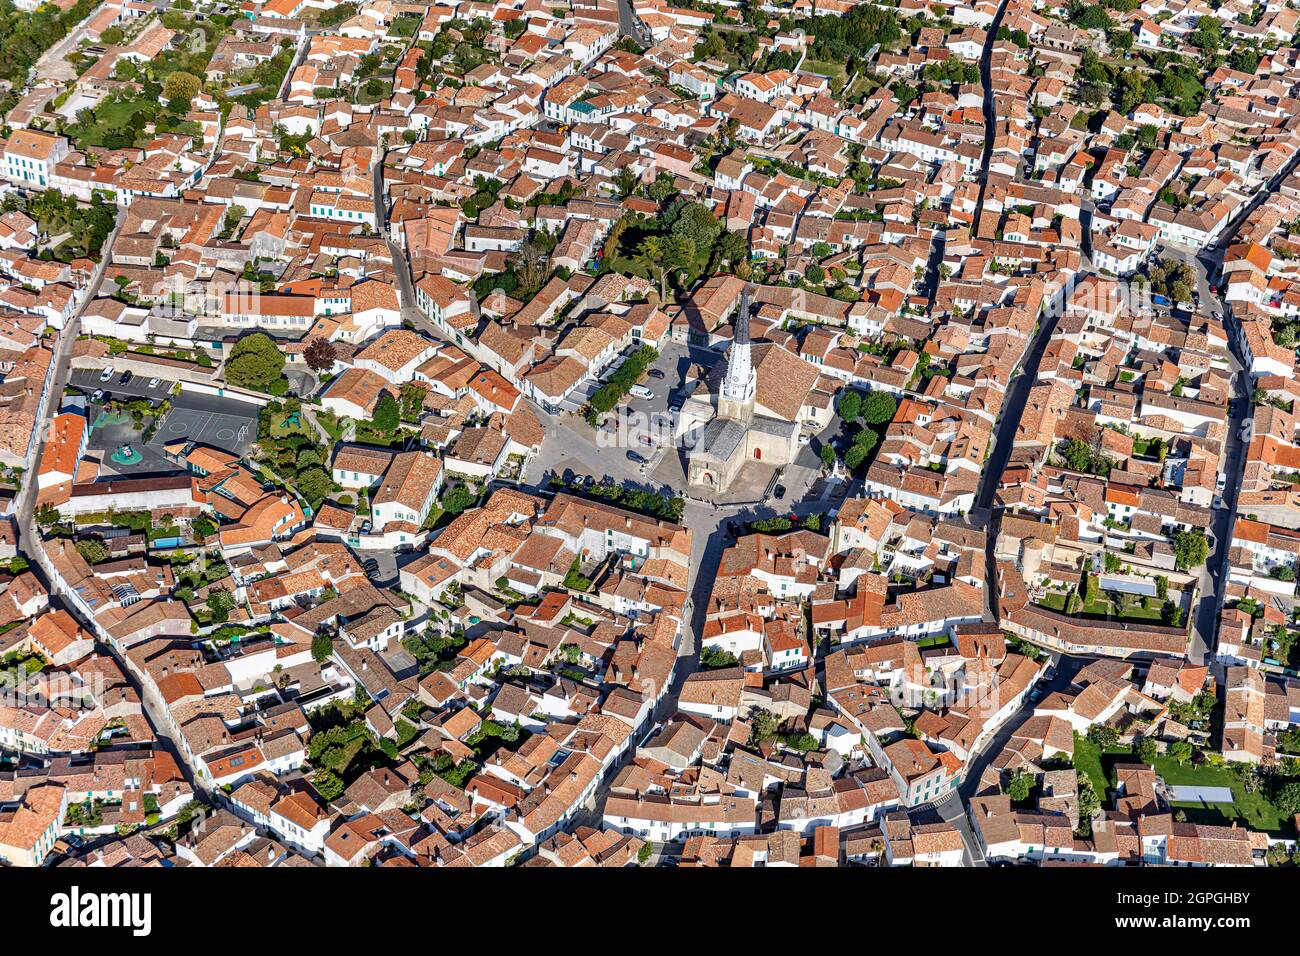 France, Charente Maritime, Ars en Re, labelled Les Plus Beaux Villages de France (The Most Beautiful Villages of France), the village (aerial view) Stock Photo